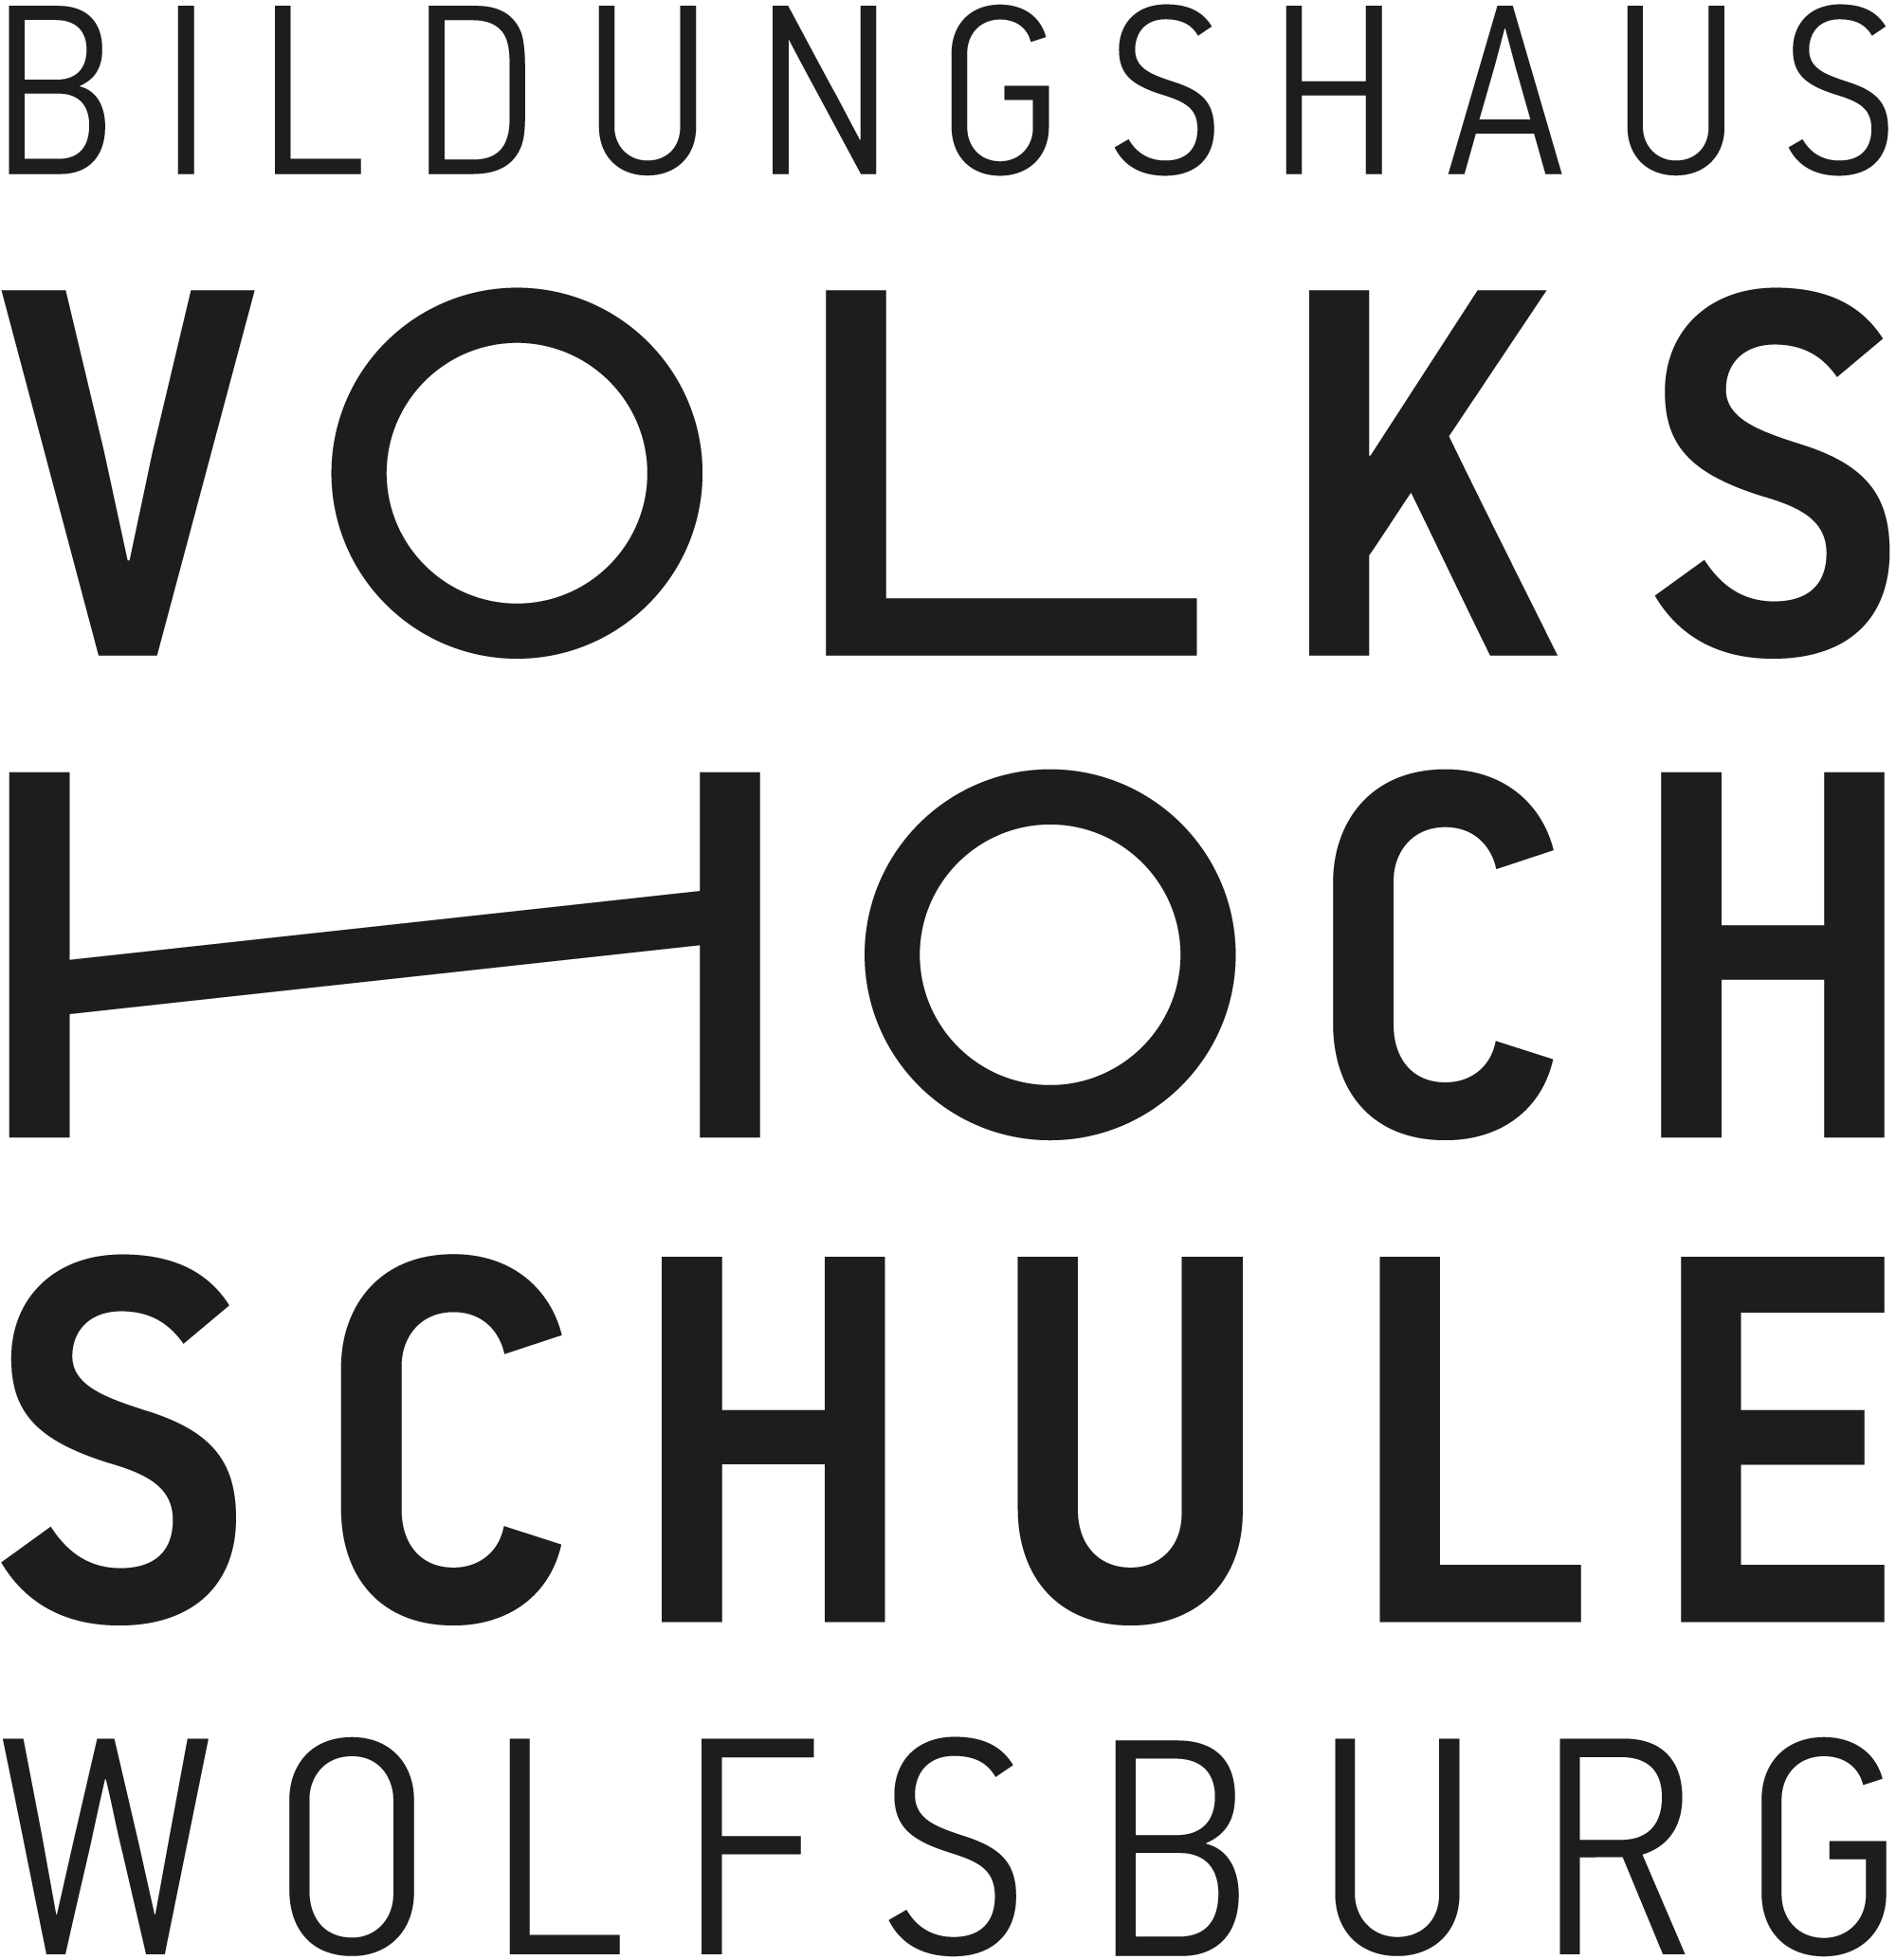 The logo of the Volkshochschule Wolfsburg